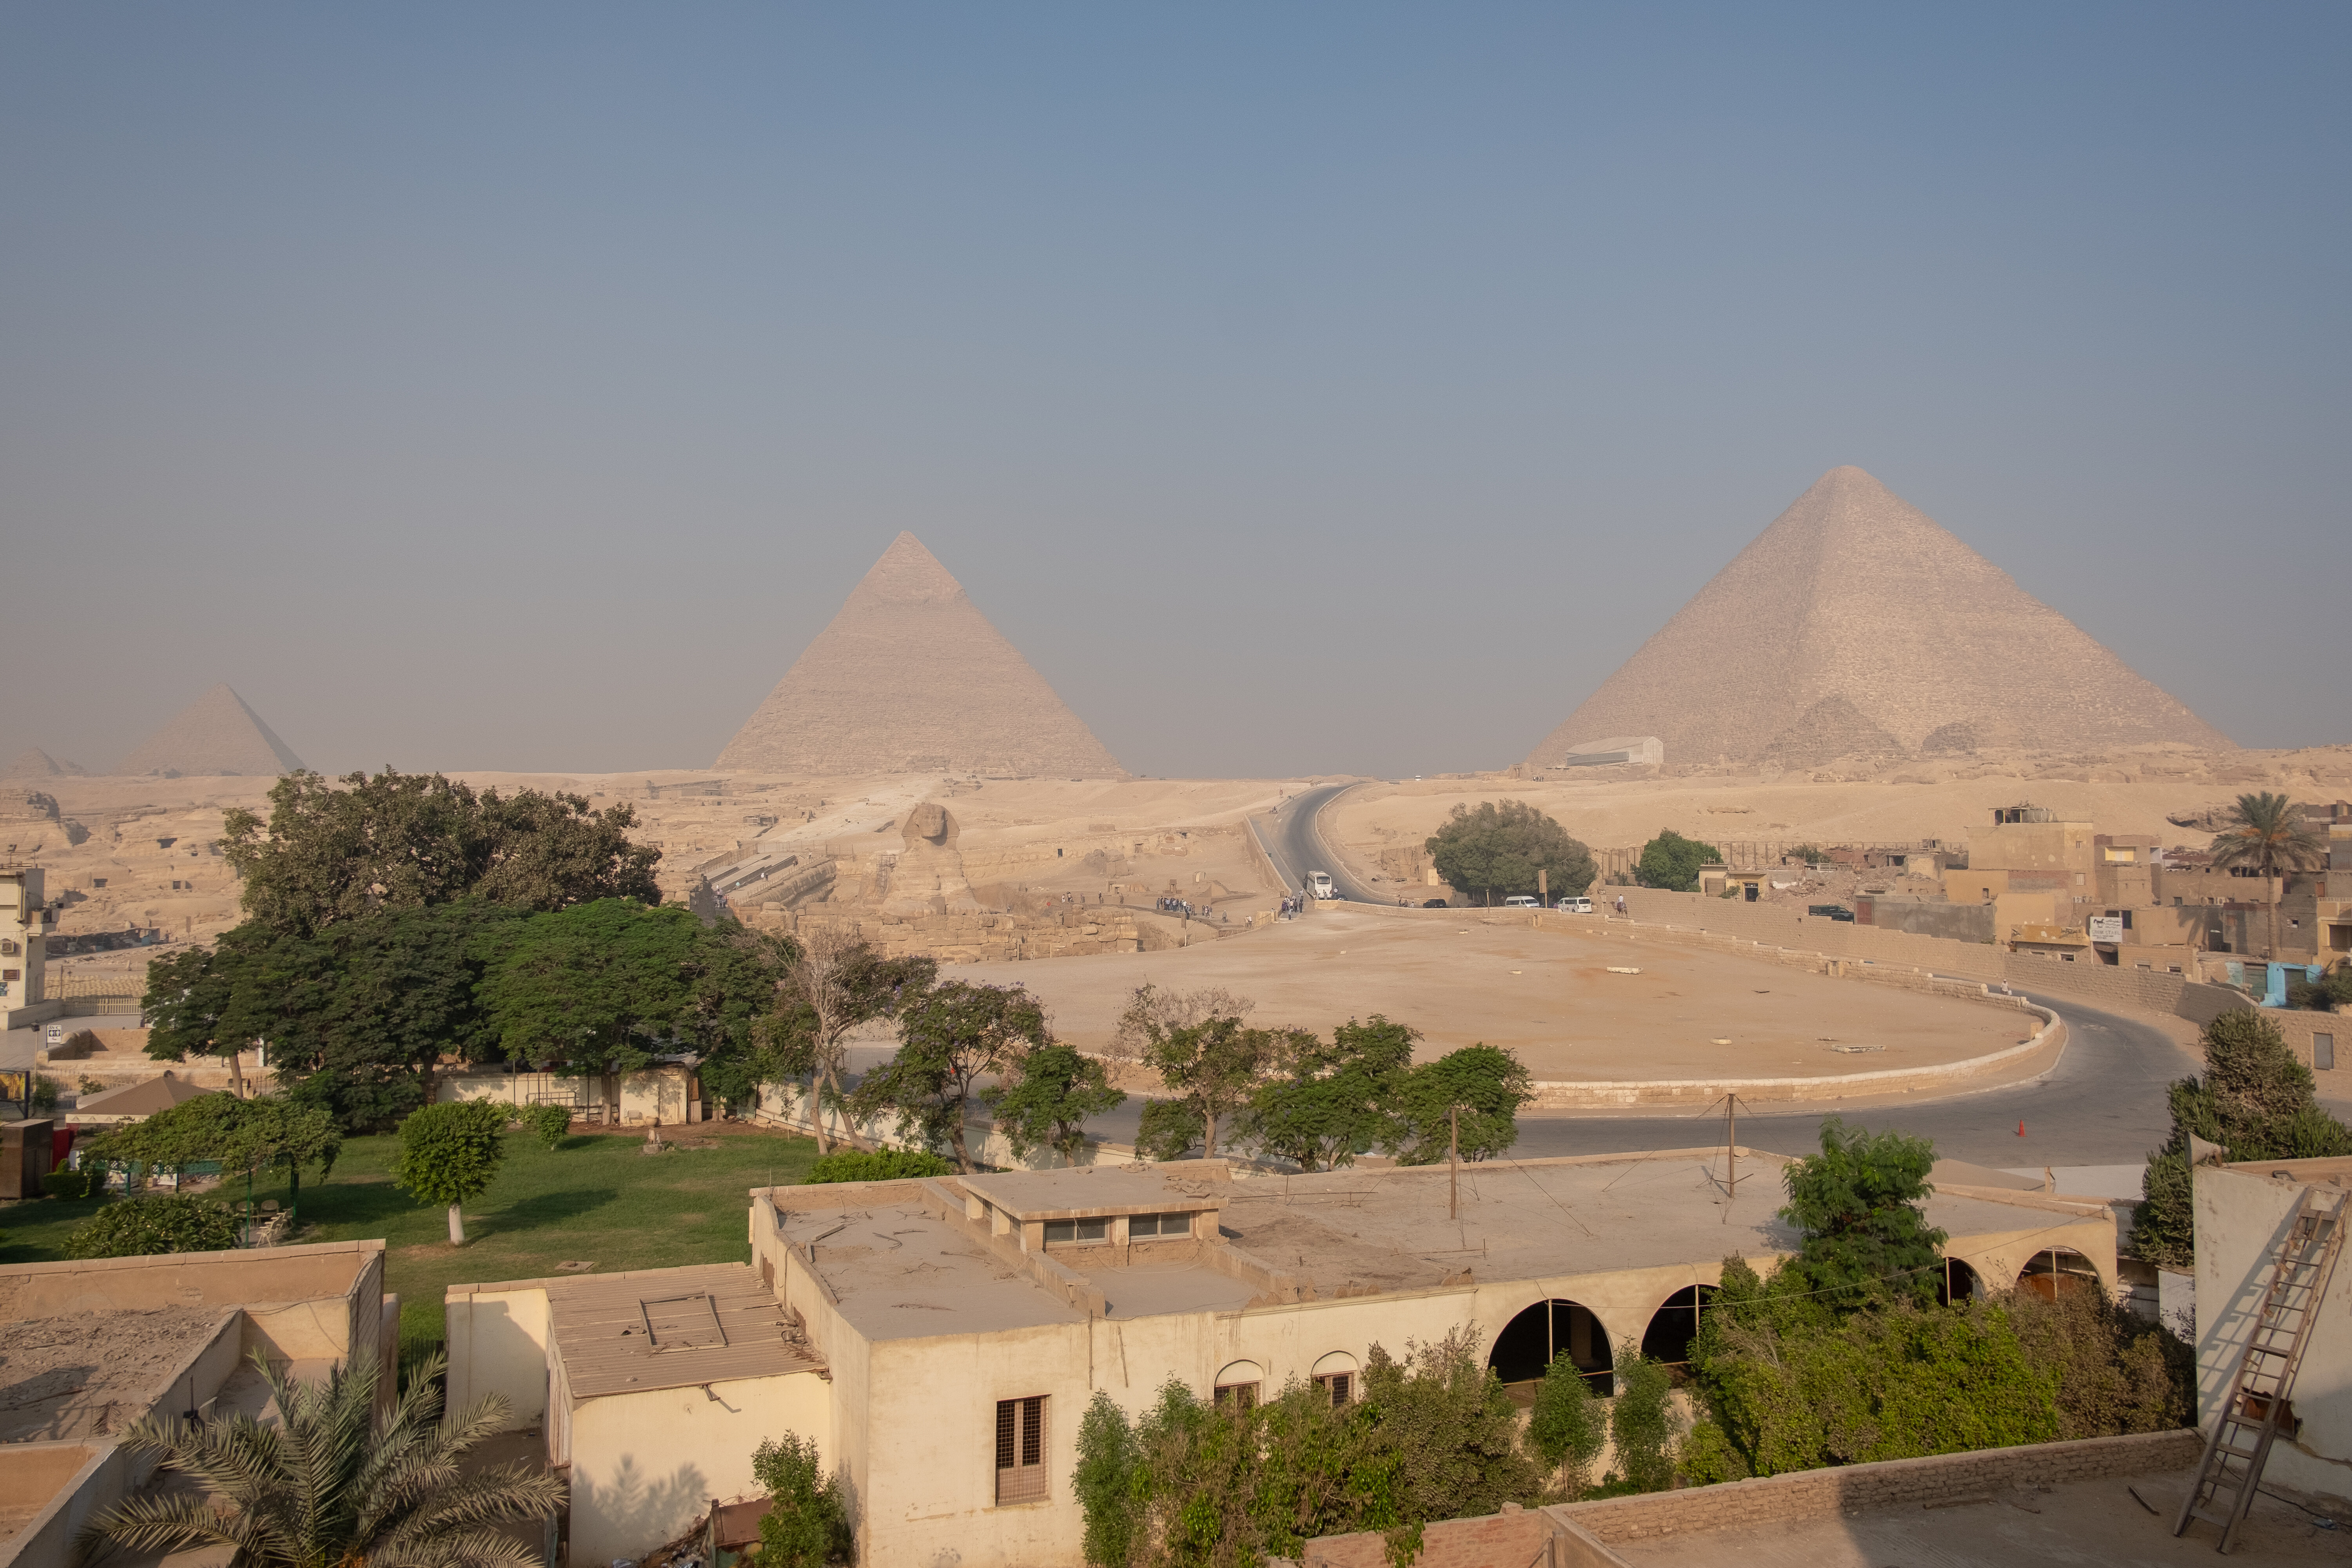 Пирамида Хеопса находится на территории
комплекса, где также есть две другие пирамиды —
Микерина и Хефрена, Большой Сфинкс.